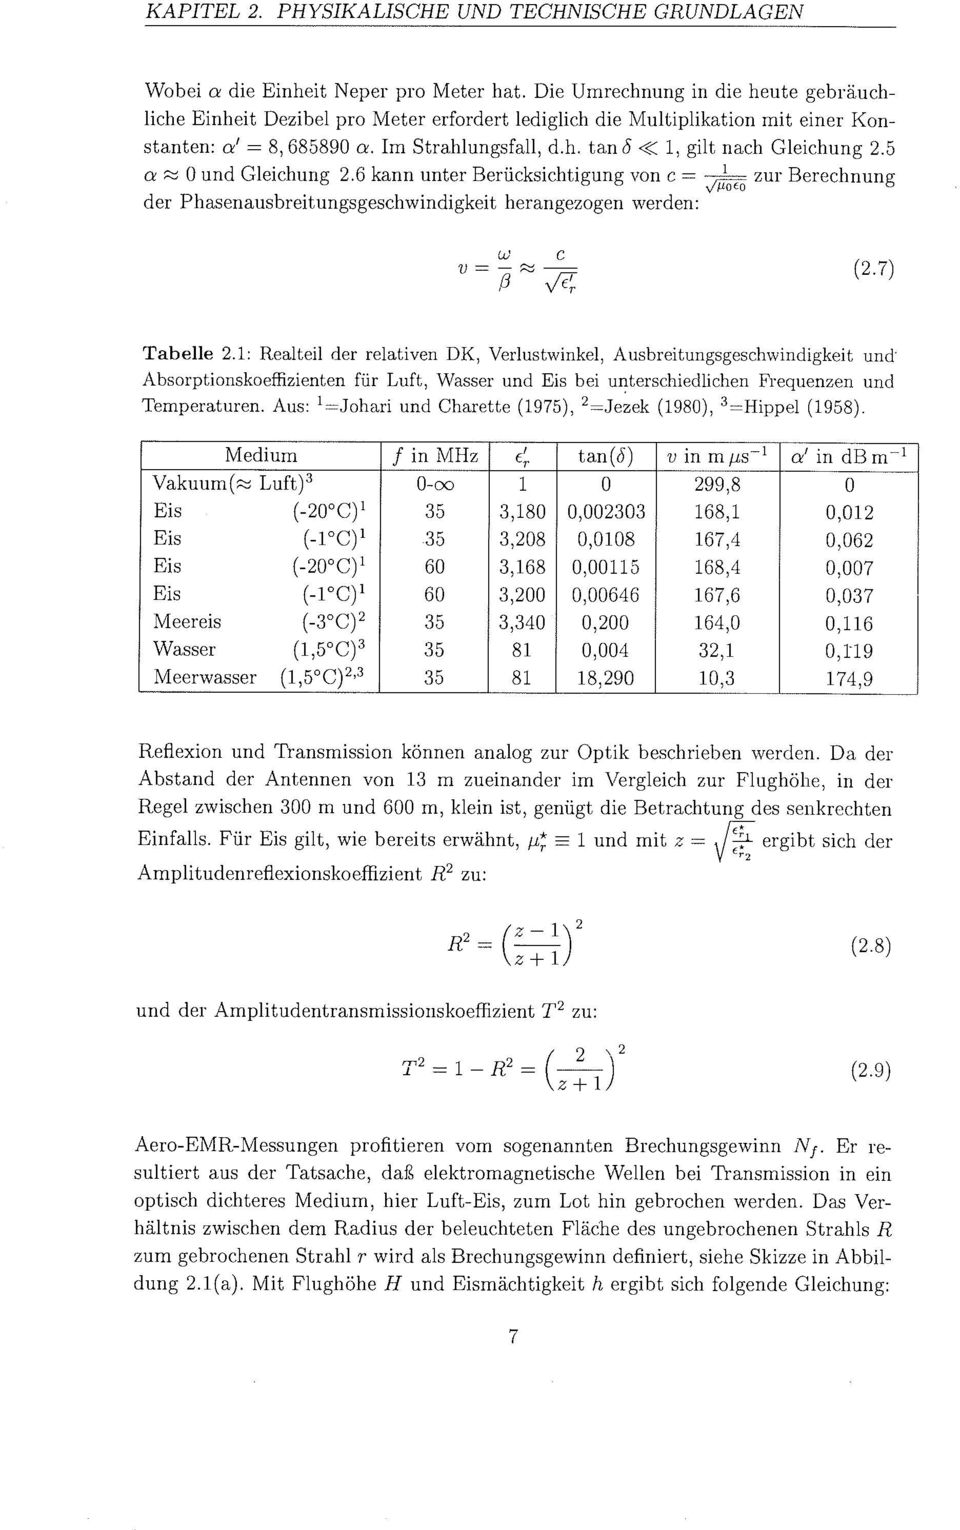 1, gilt nach Gleichung 2.5 a % 0 und Gleichung 2.6 kann unter BerÃ¼cksichtigun von C = v'foeo zur Berechnung der Phasenausbreitungsgeschwindigkeit herangezogen werden: Tabelle 2.